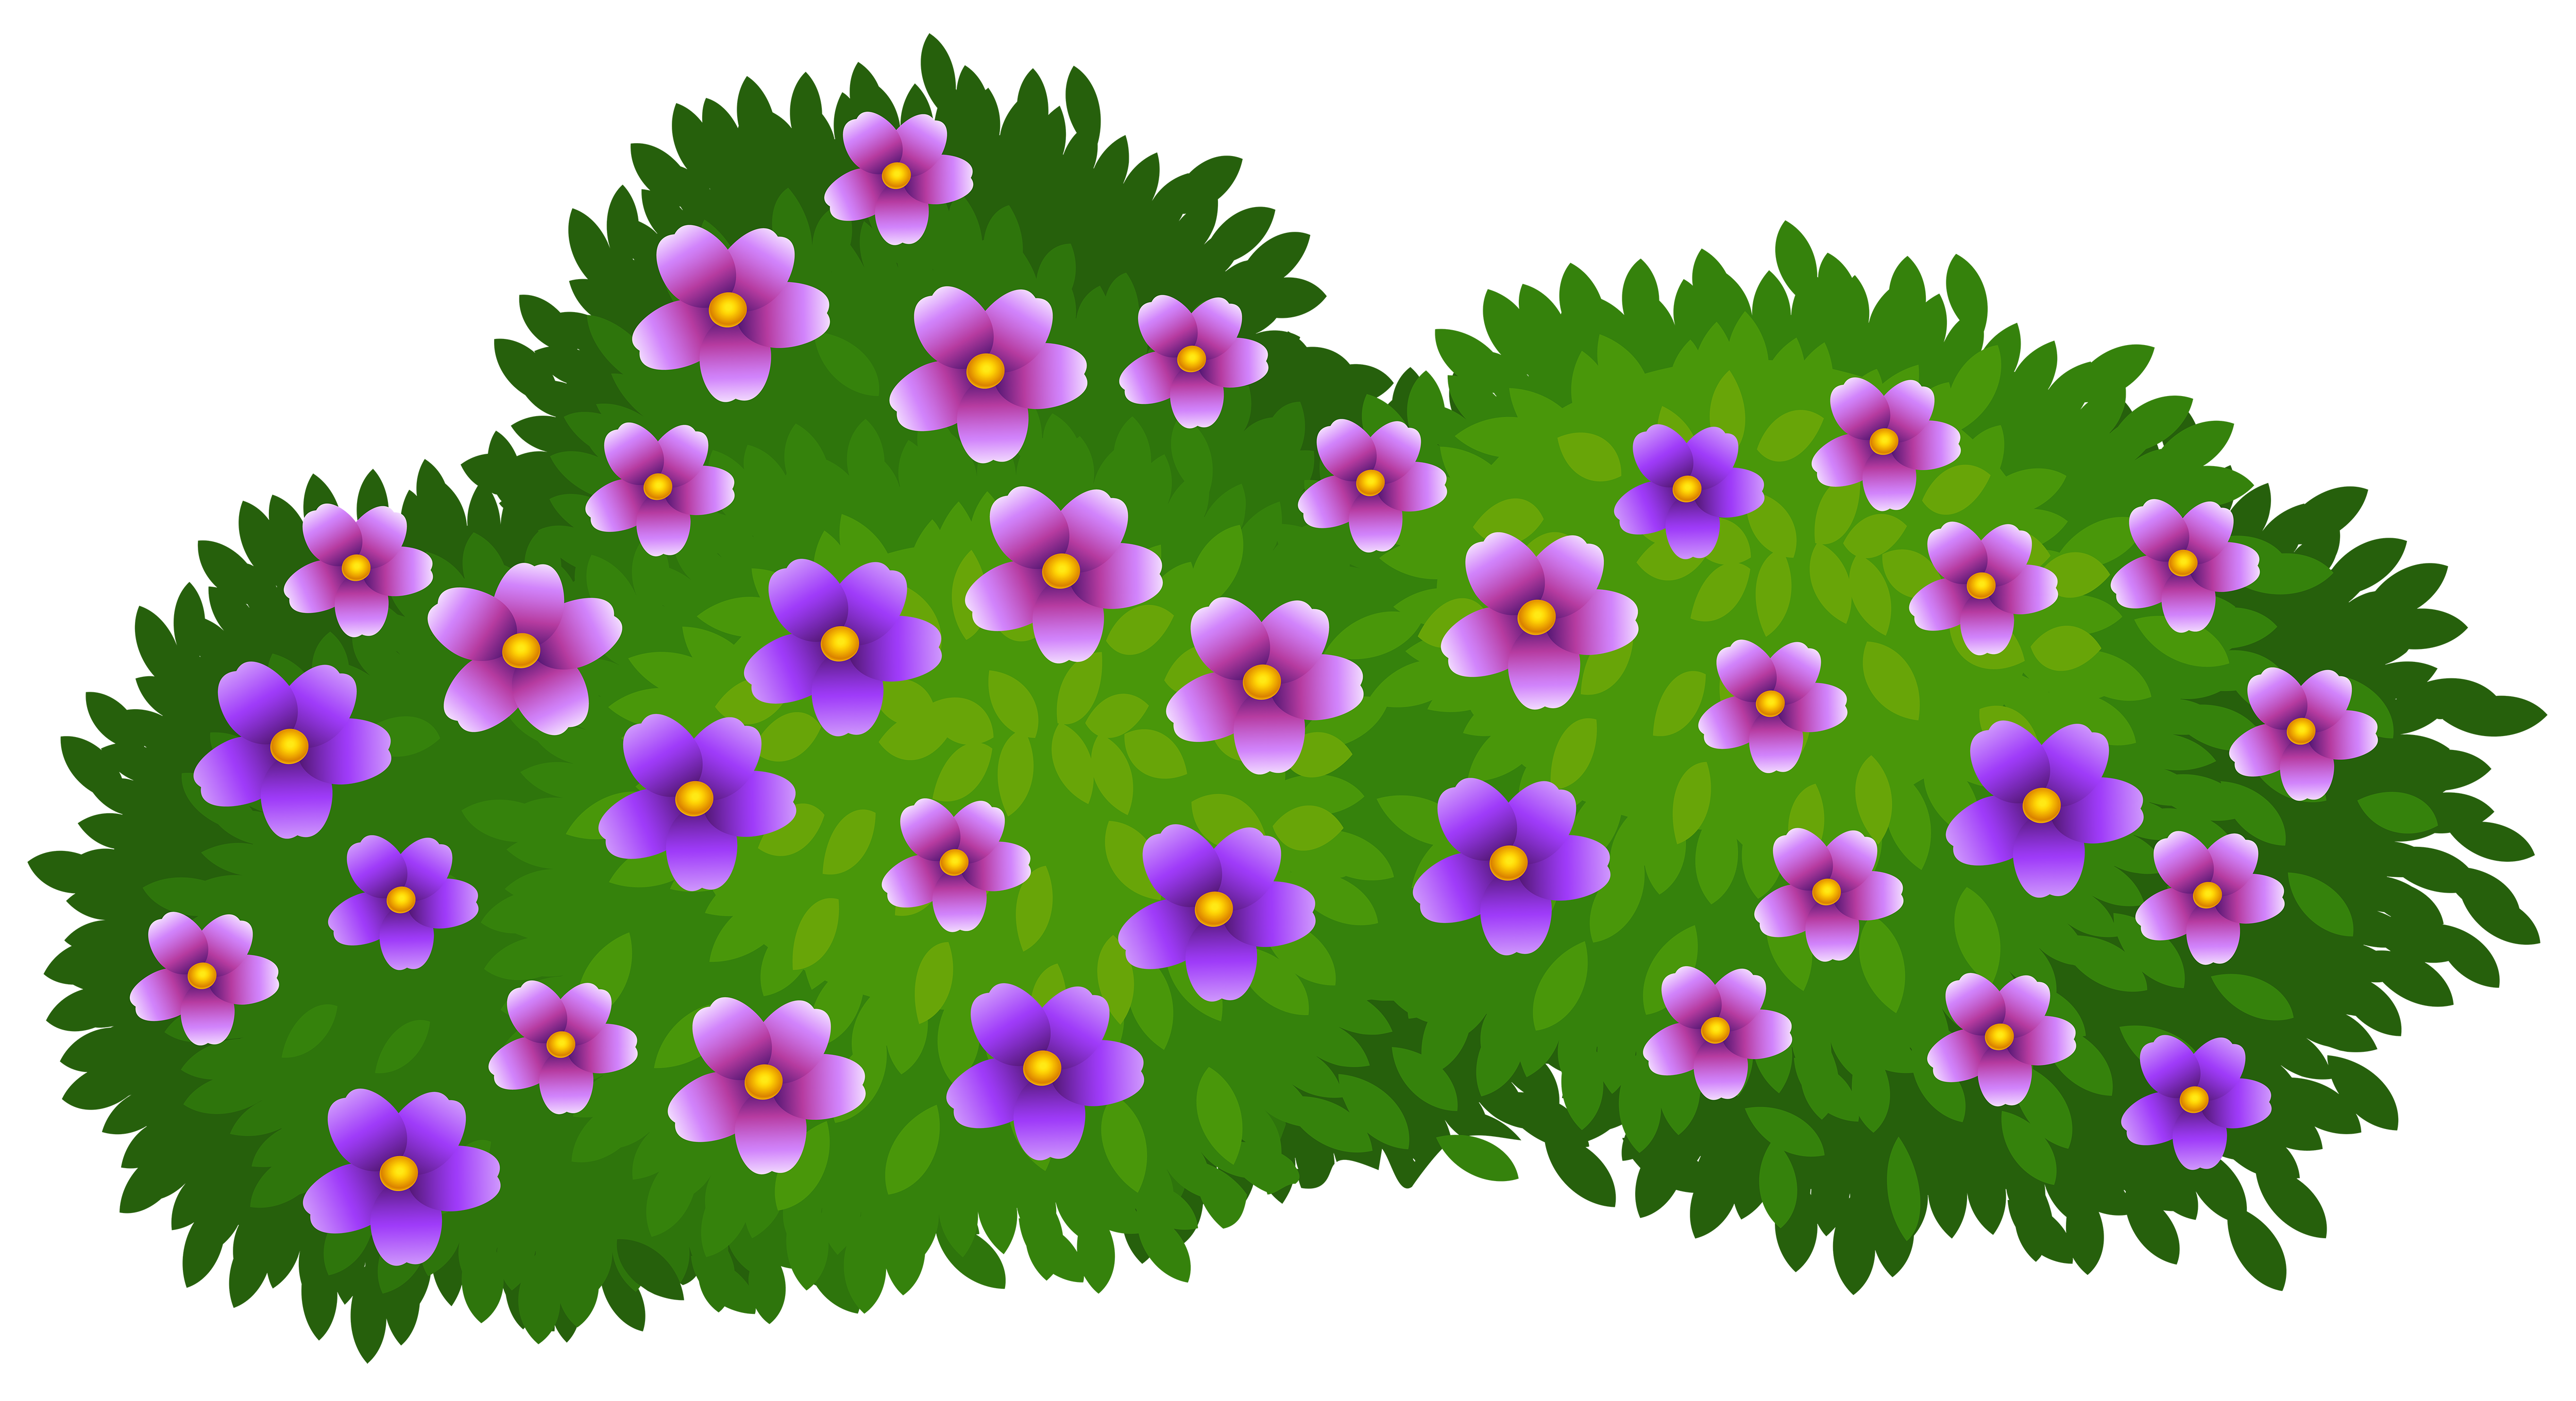 green cartoon flower